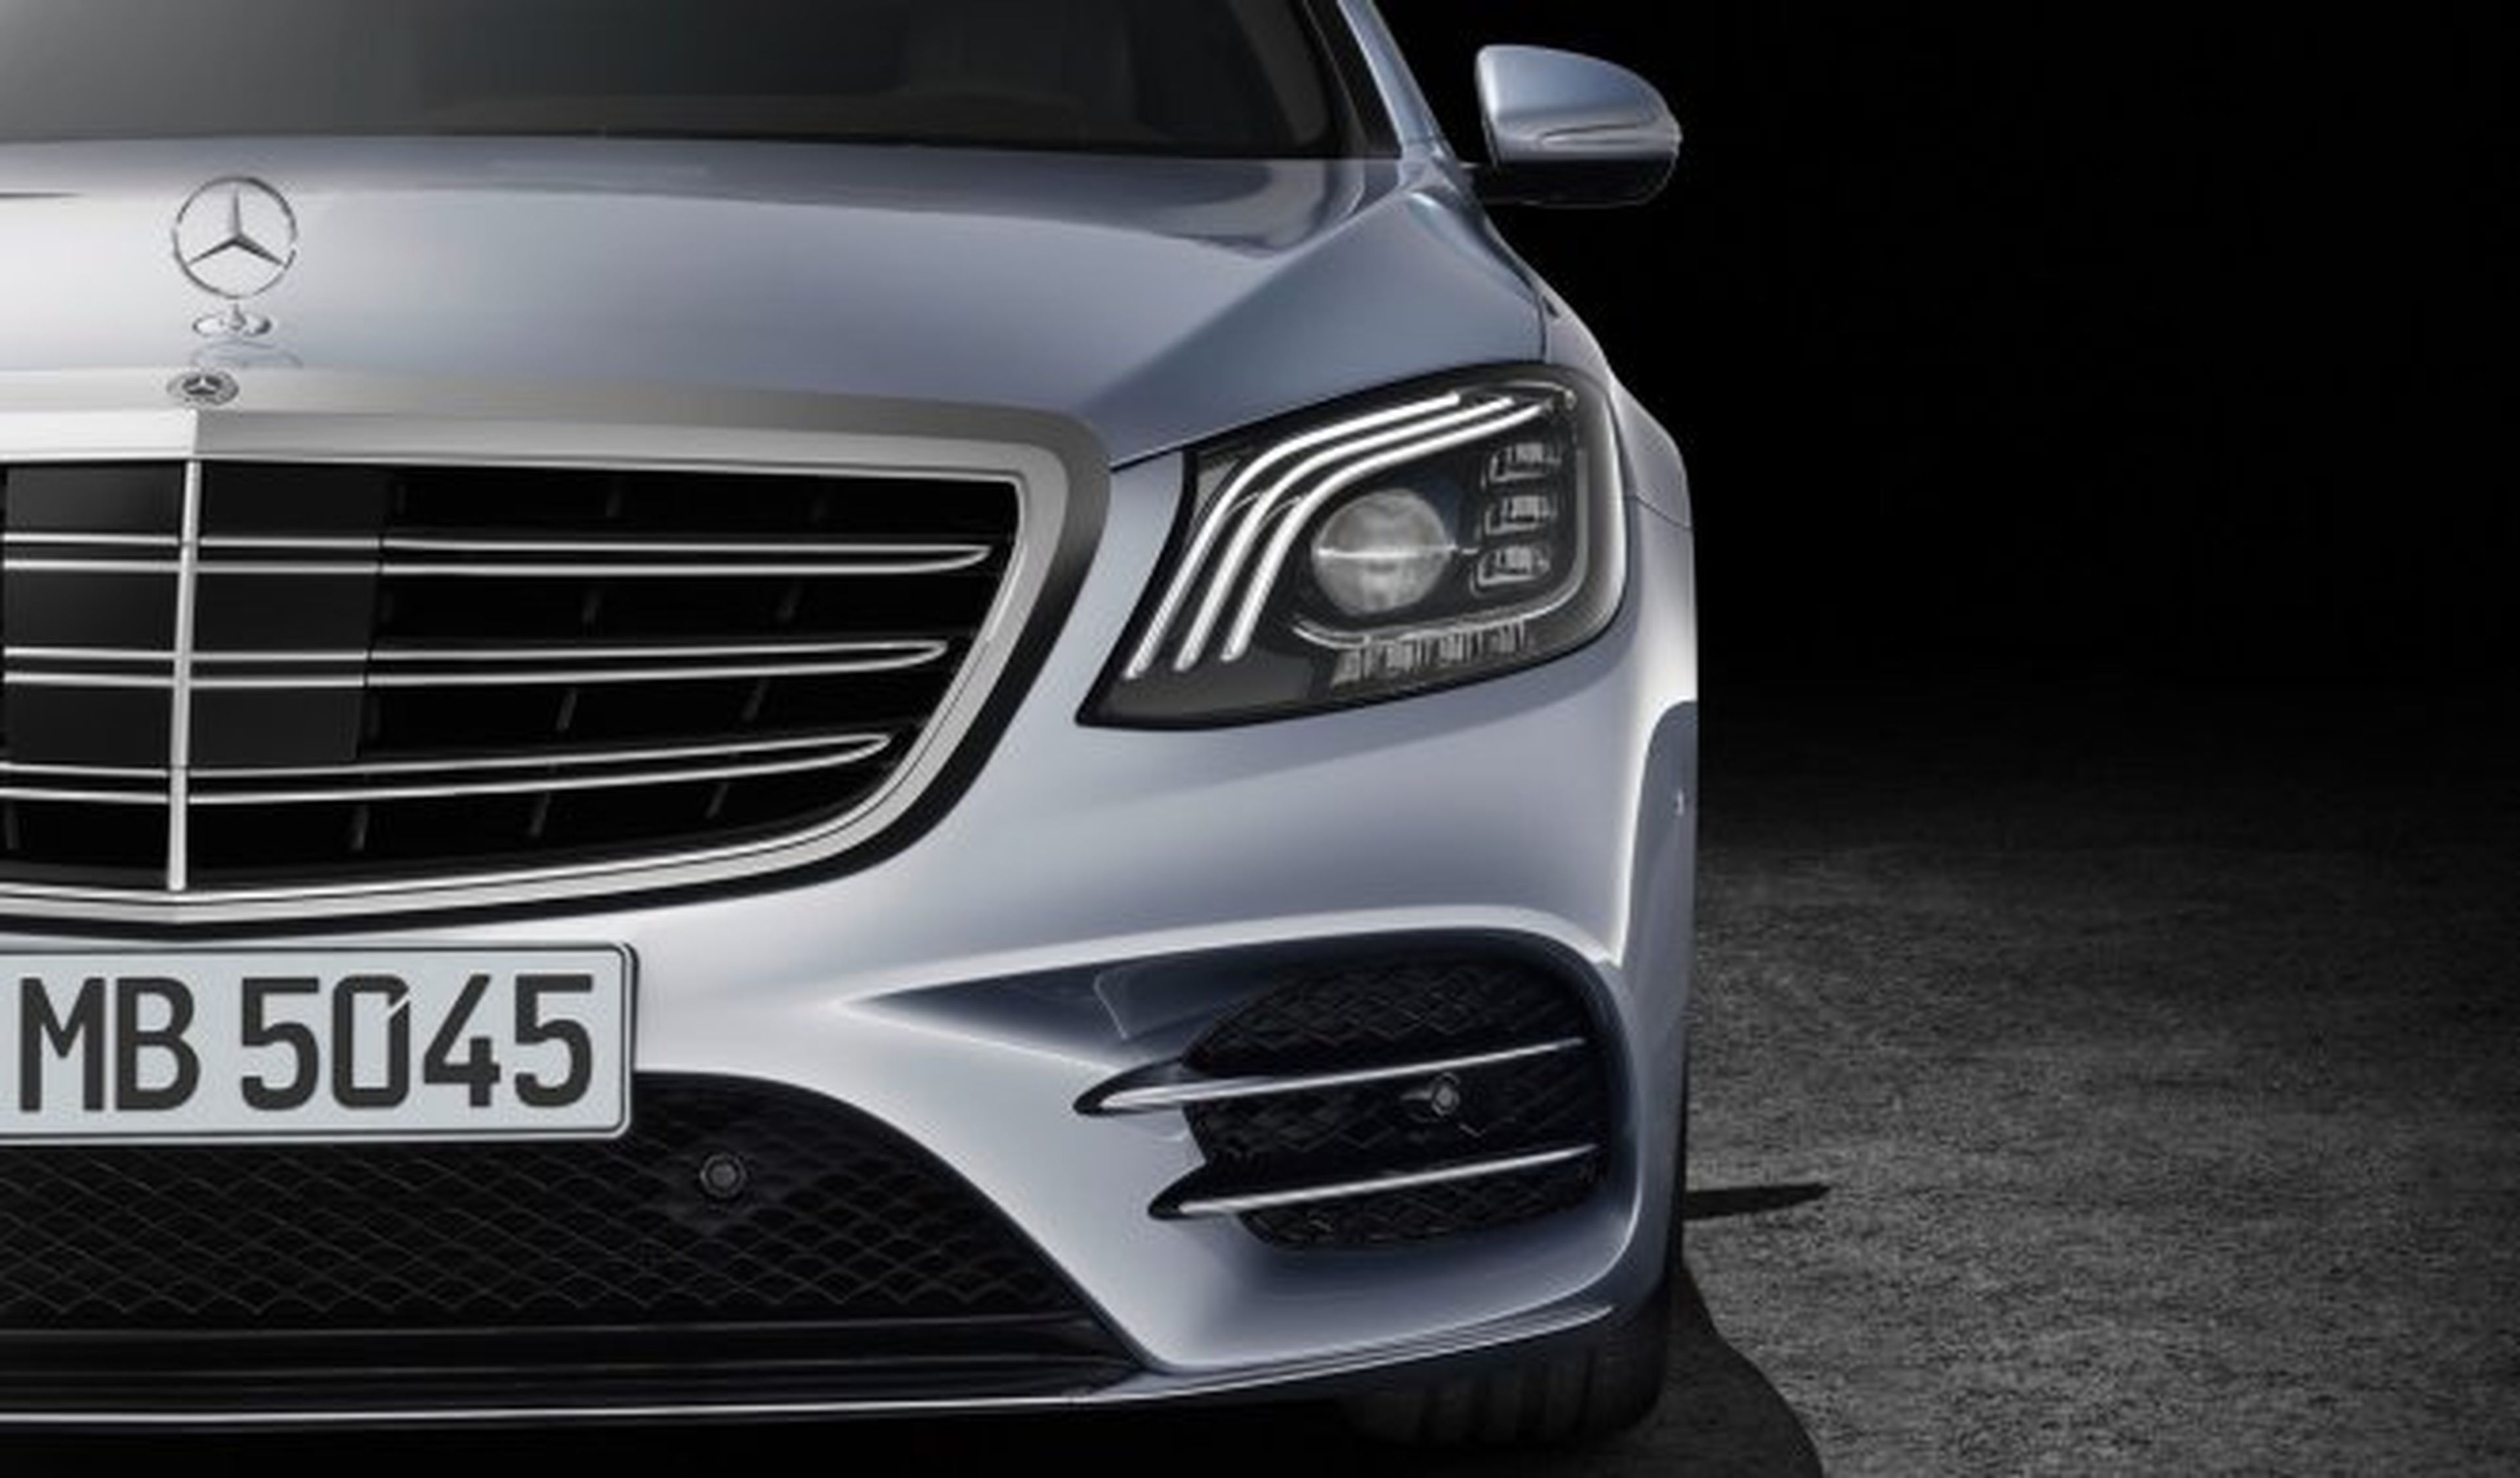 Nos mojamos: ¿Por qué Mercedes recupera terreno en ventas?